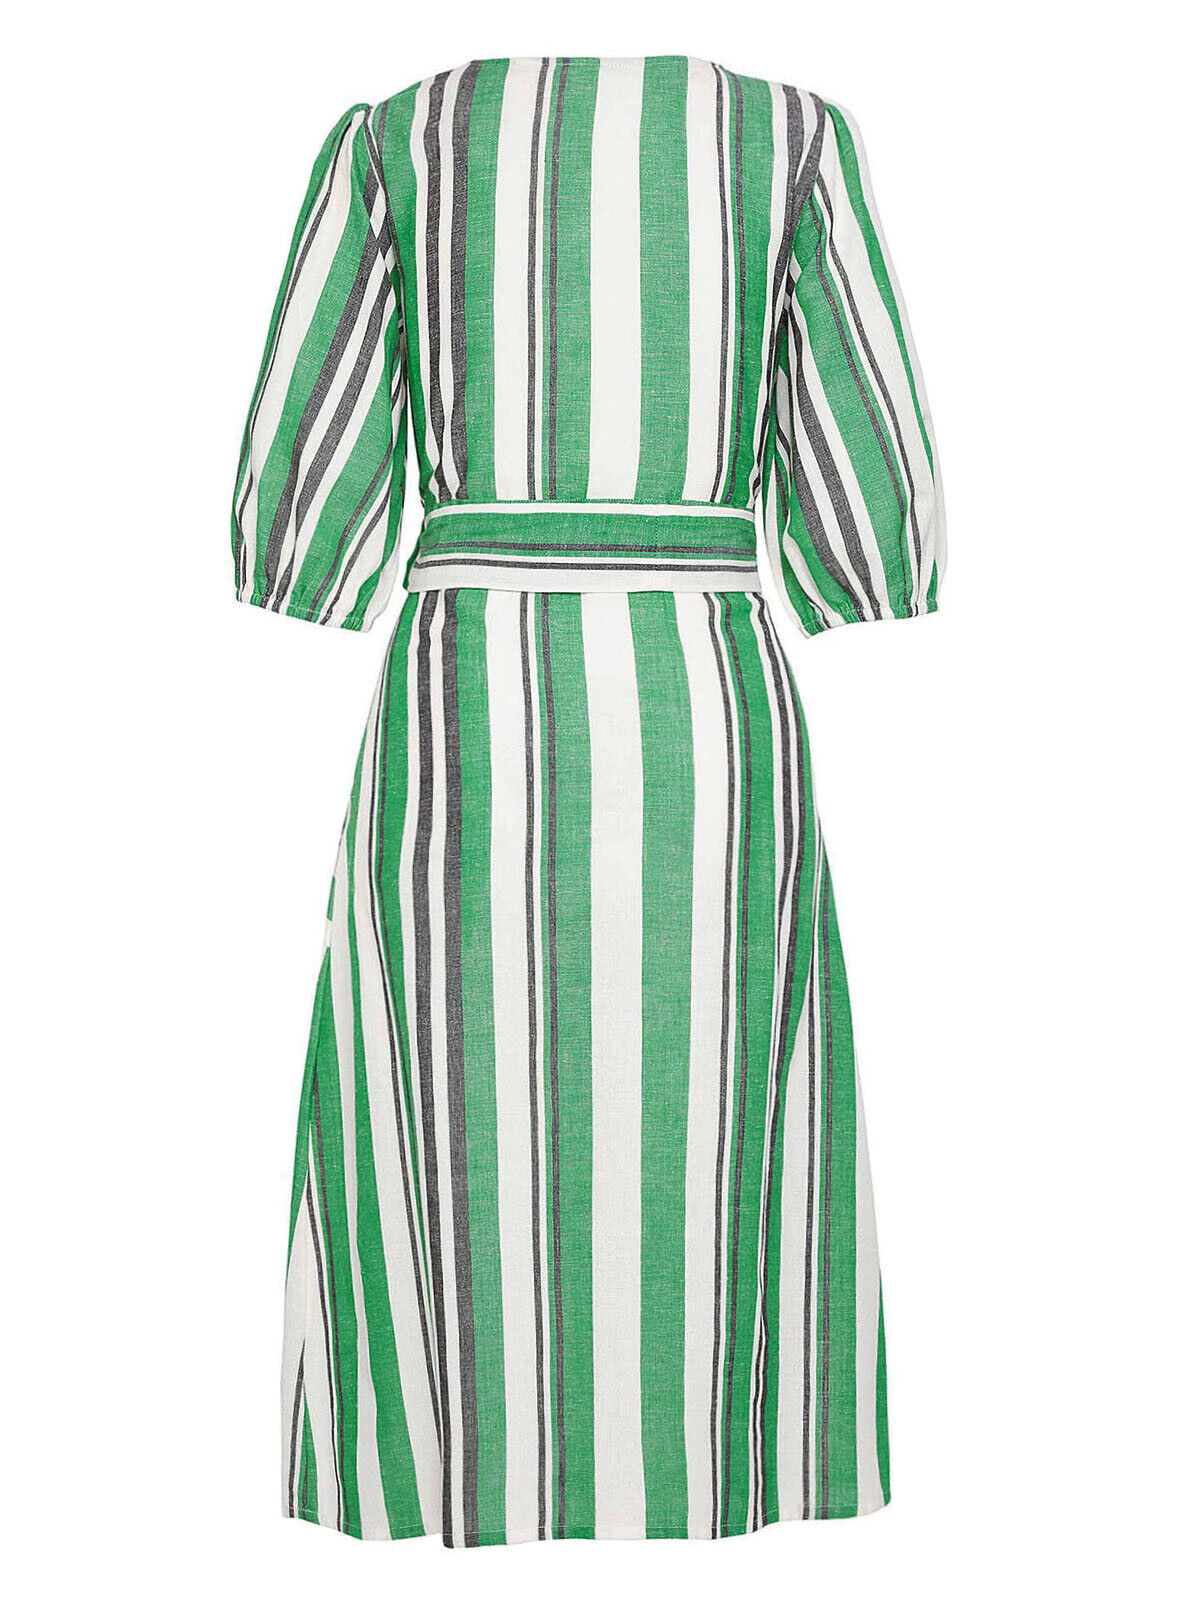 JD Williams Green Striped Button Down Linen Dress 18 22 24 26 28 30 32 RRP £40